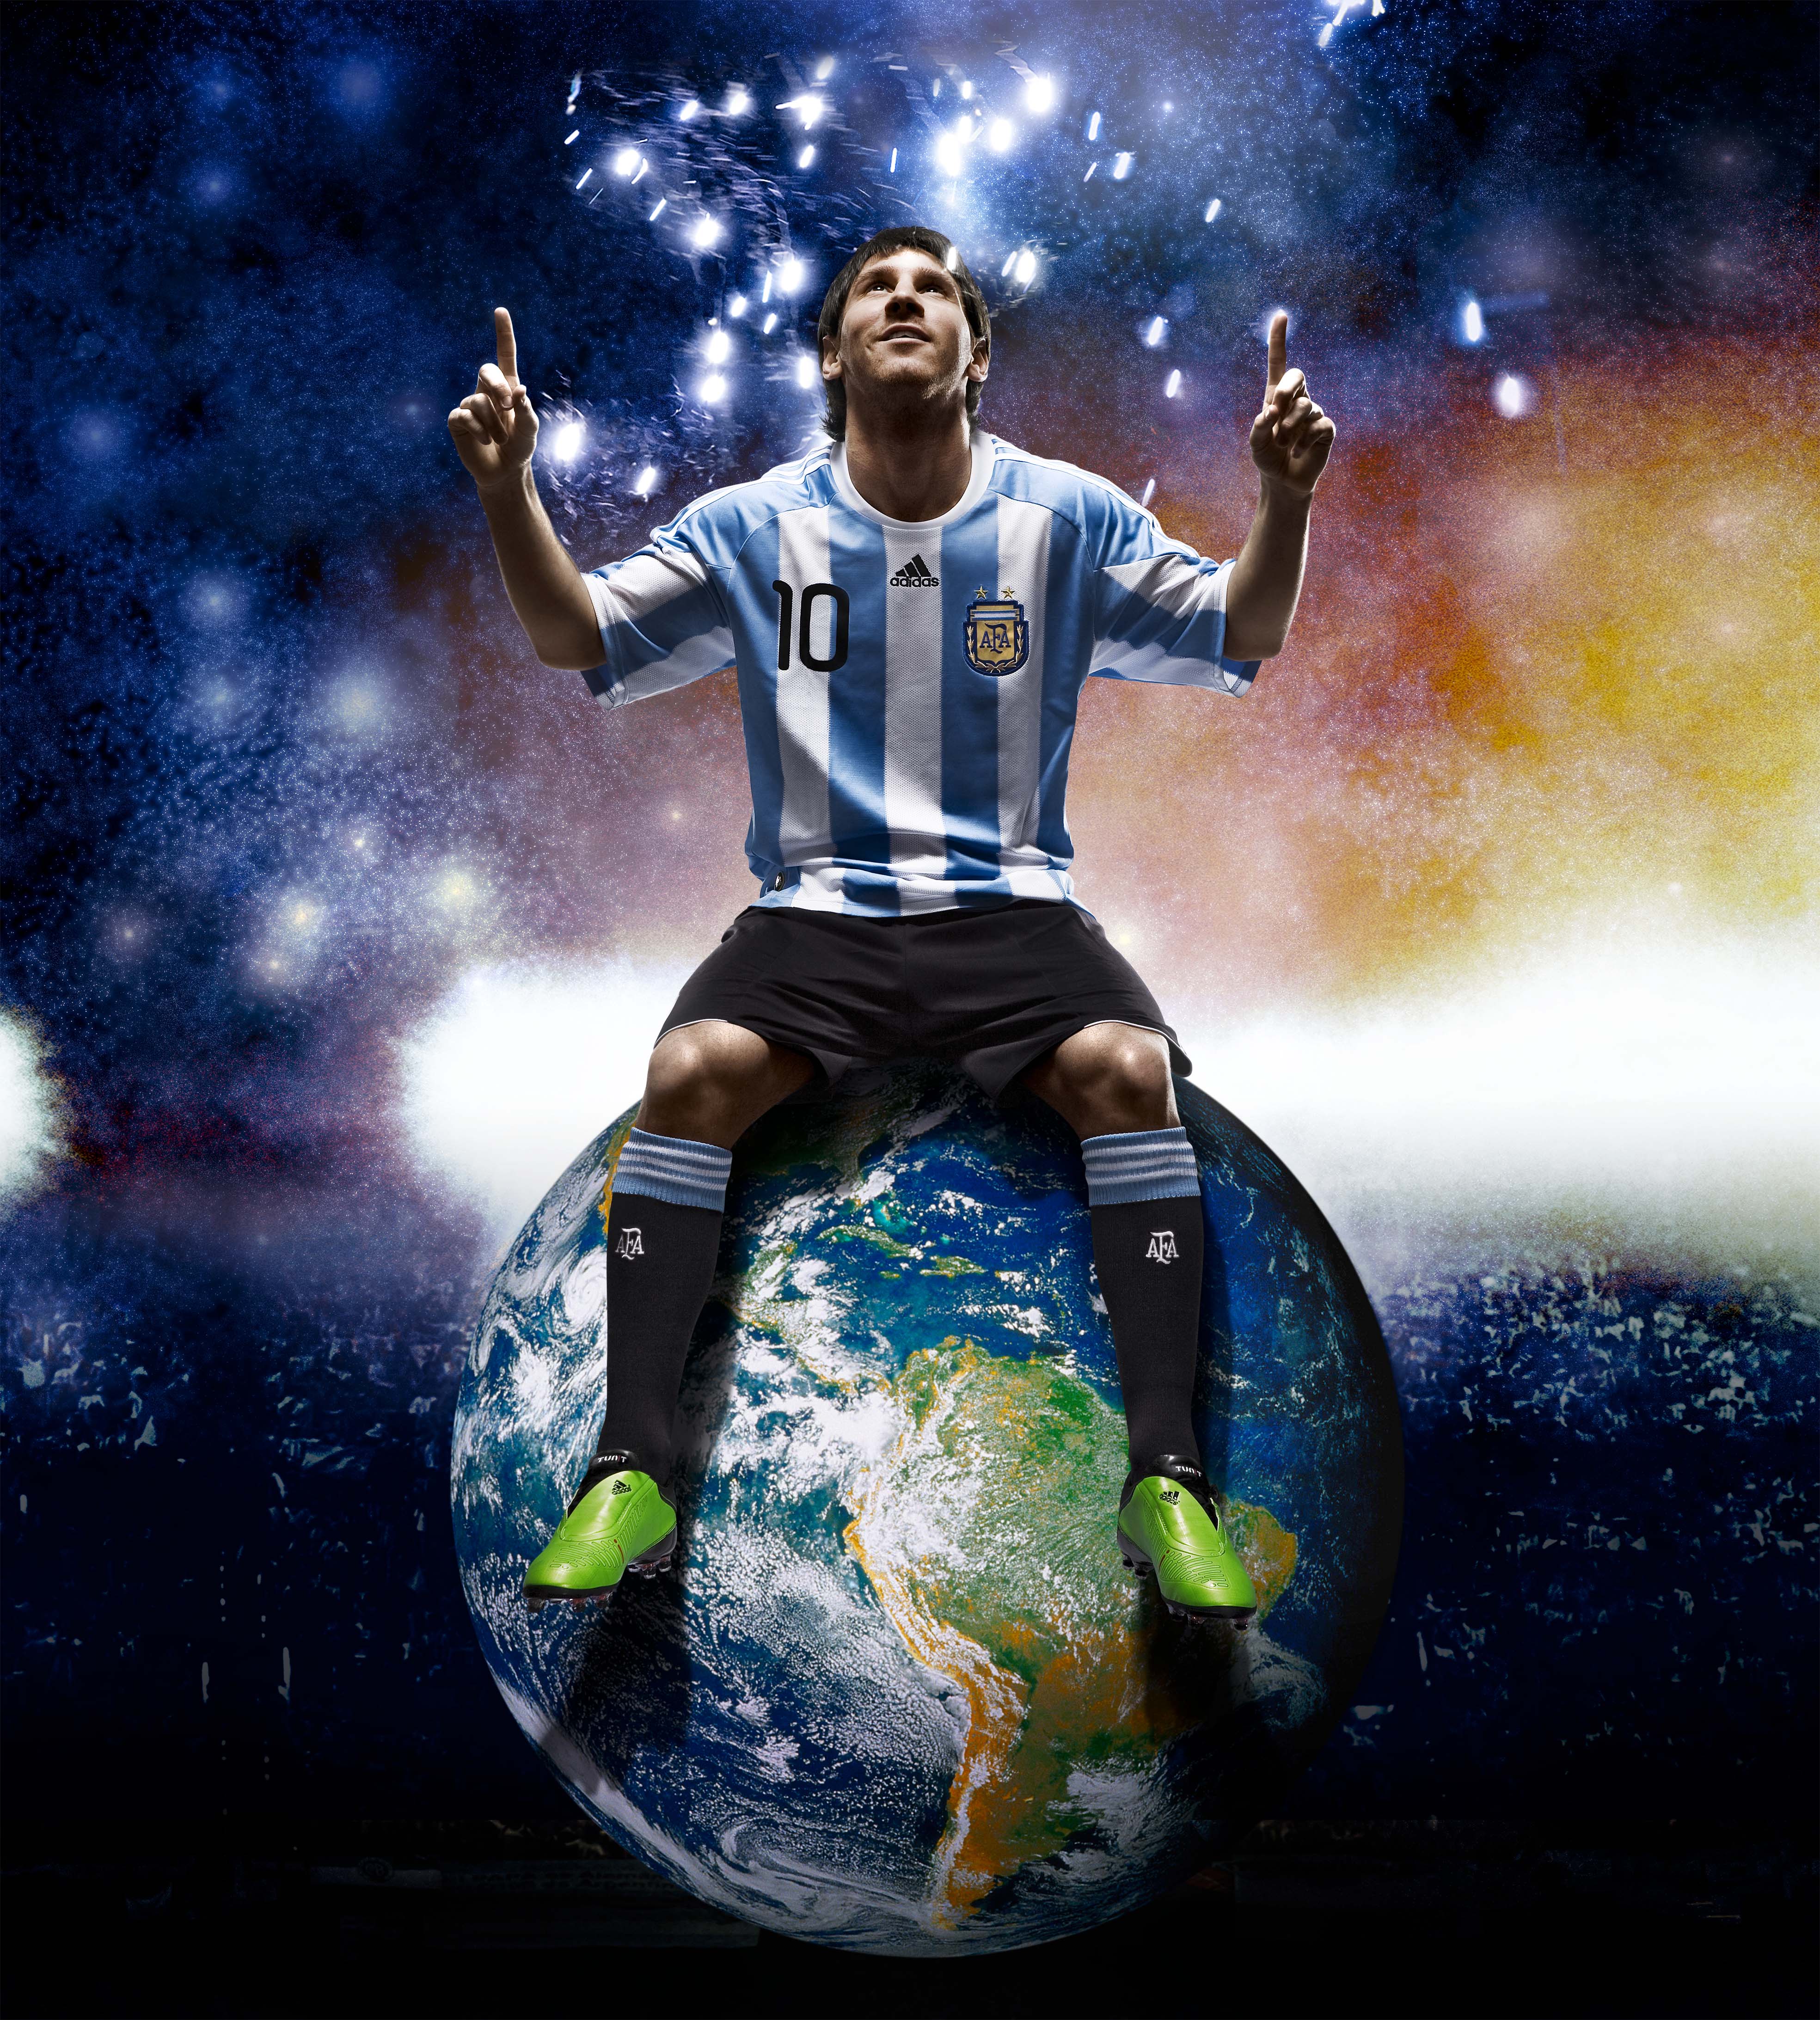 Hãy khoe sở thích yêu Messi của bạn bằng cách chọn một hình nền Messi đẹp trên điện thoại của bạn! Khám phá bộ sưu tập hình nền Messi tuyệt đẹp của chúng tôi với những hình ảnh ấn tượng về siêu sao bóng đá Argentina này.